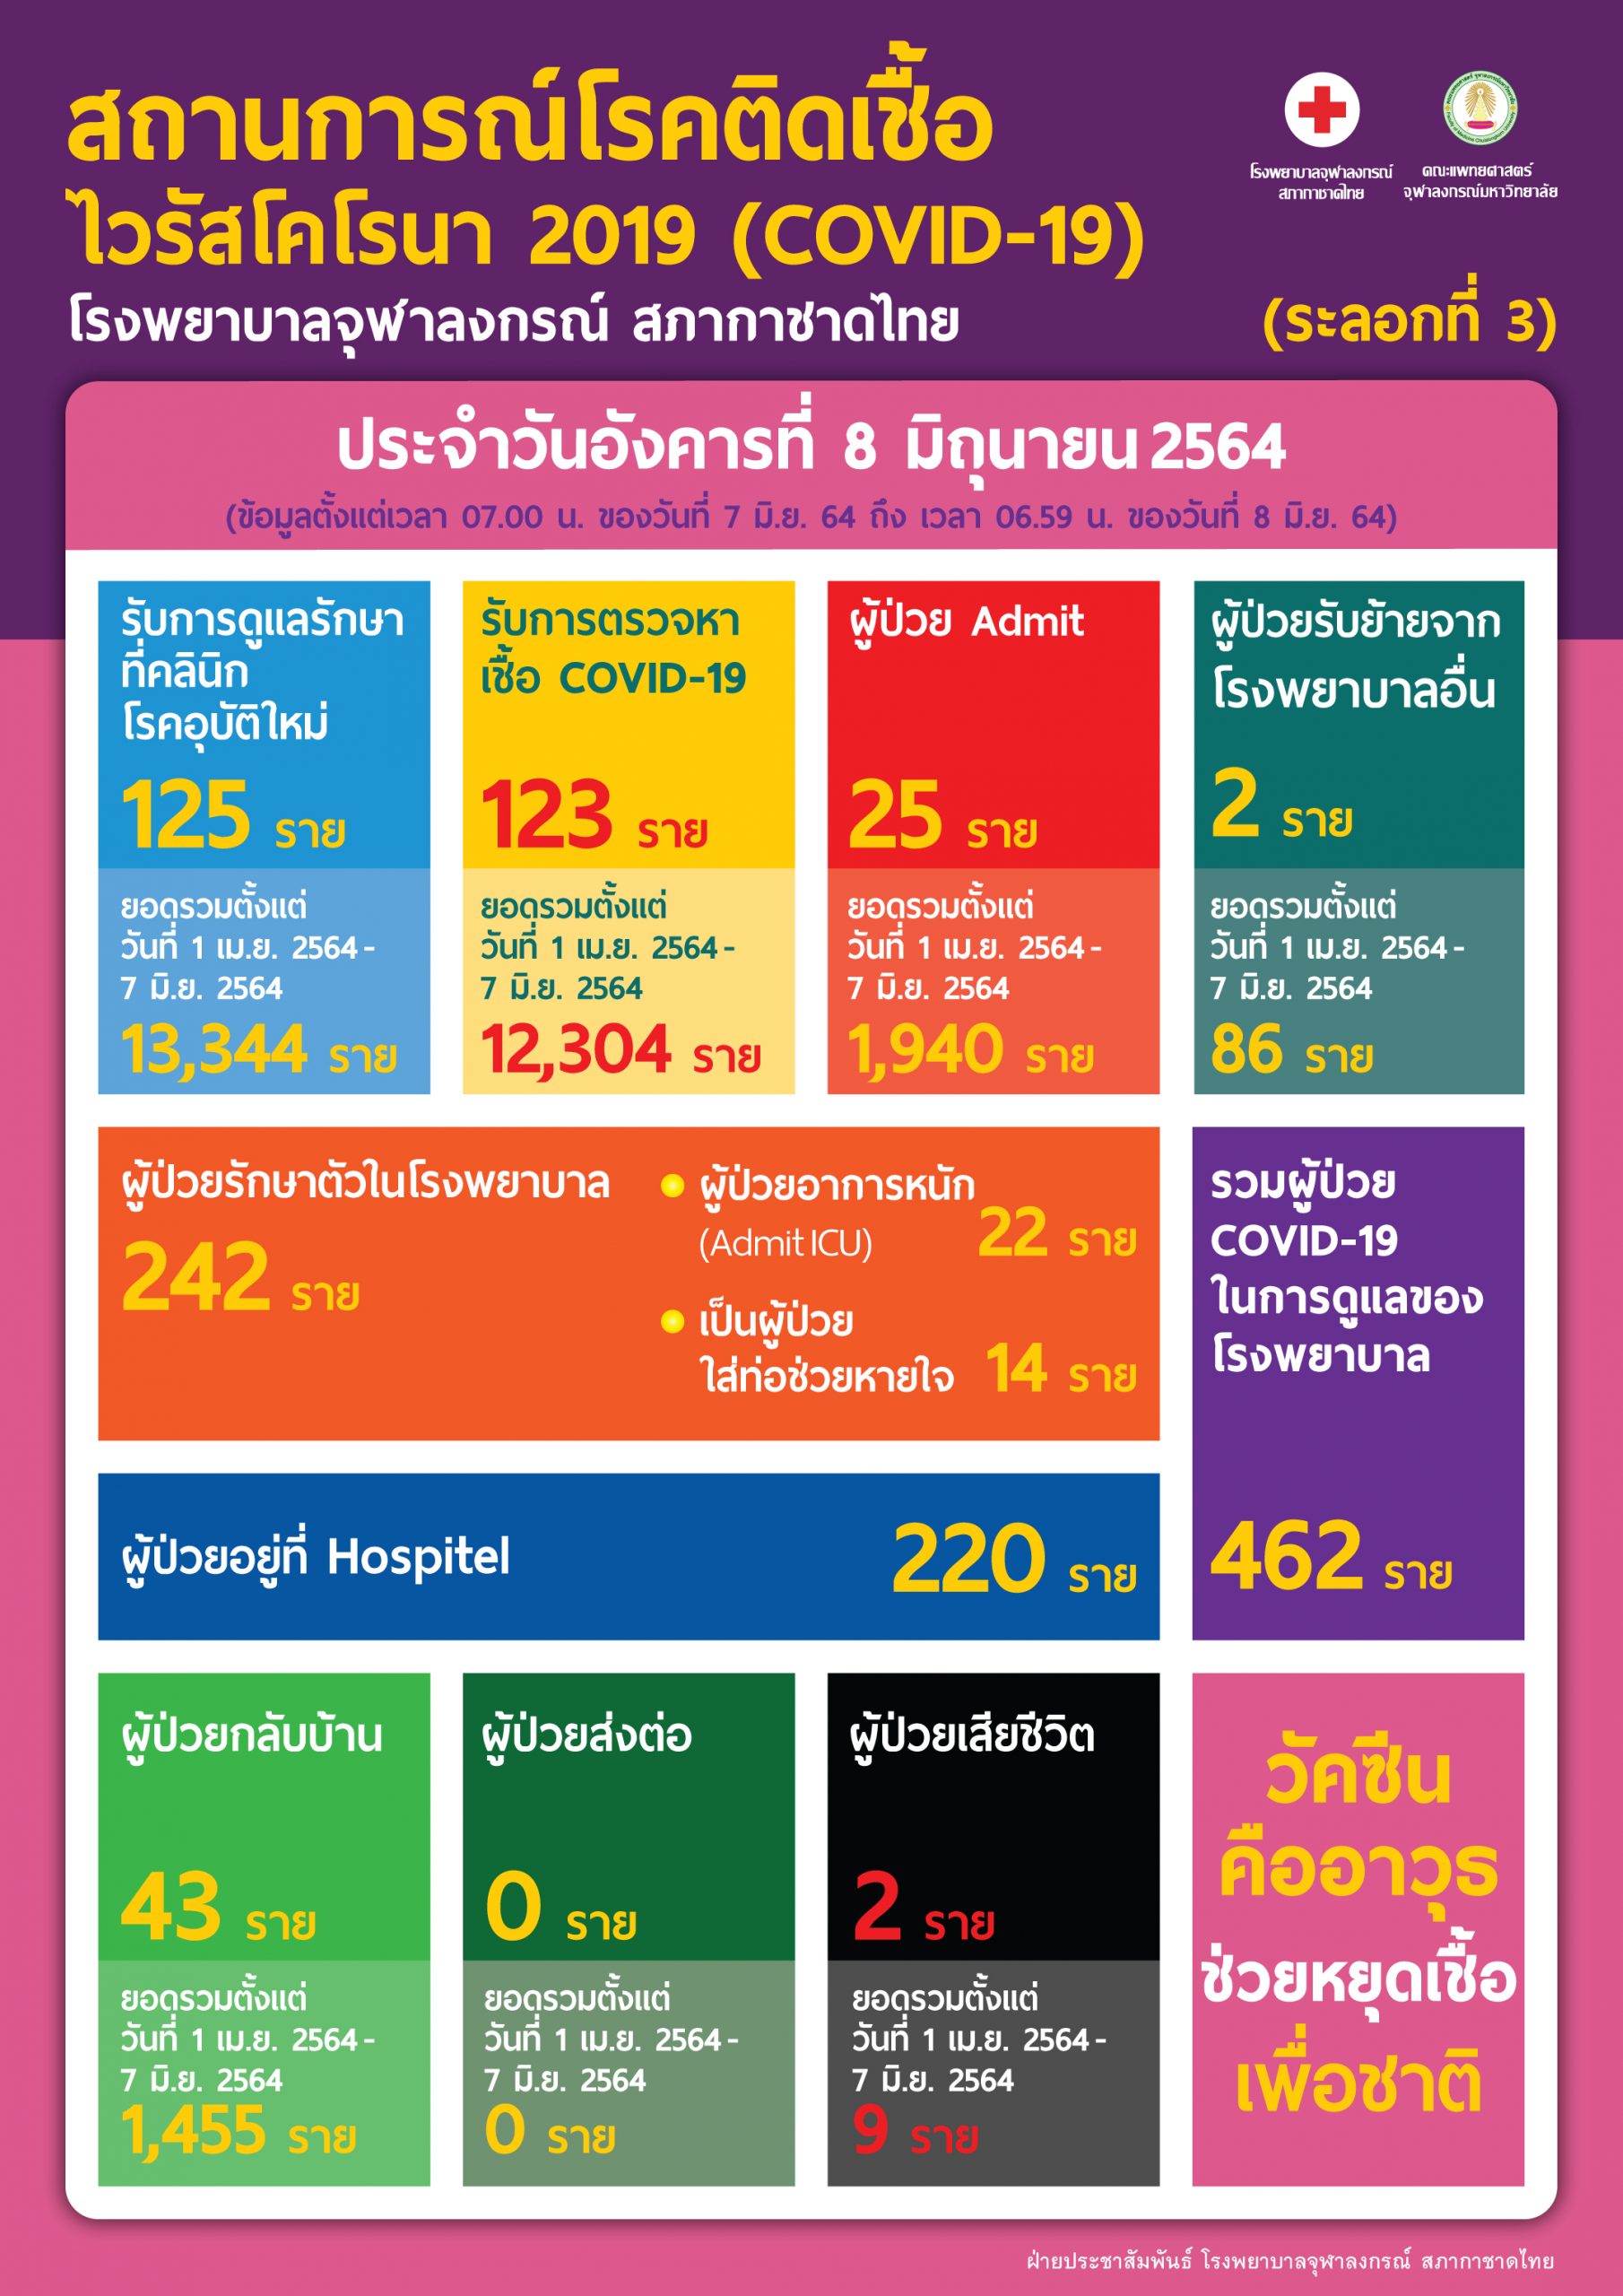 สถานการณ์โรคติดเชื้อไวรัสโคโรนา 2019 (COVID-19) (ระลอกที่ 3) โรงพยาบาลจุฬาลงกรณ์ สภากาชาดไทย  ประจำวันอังคารที่ 8 มิถุนายน 2564